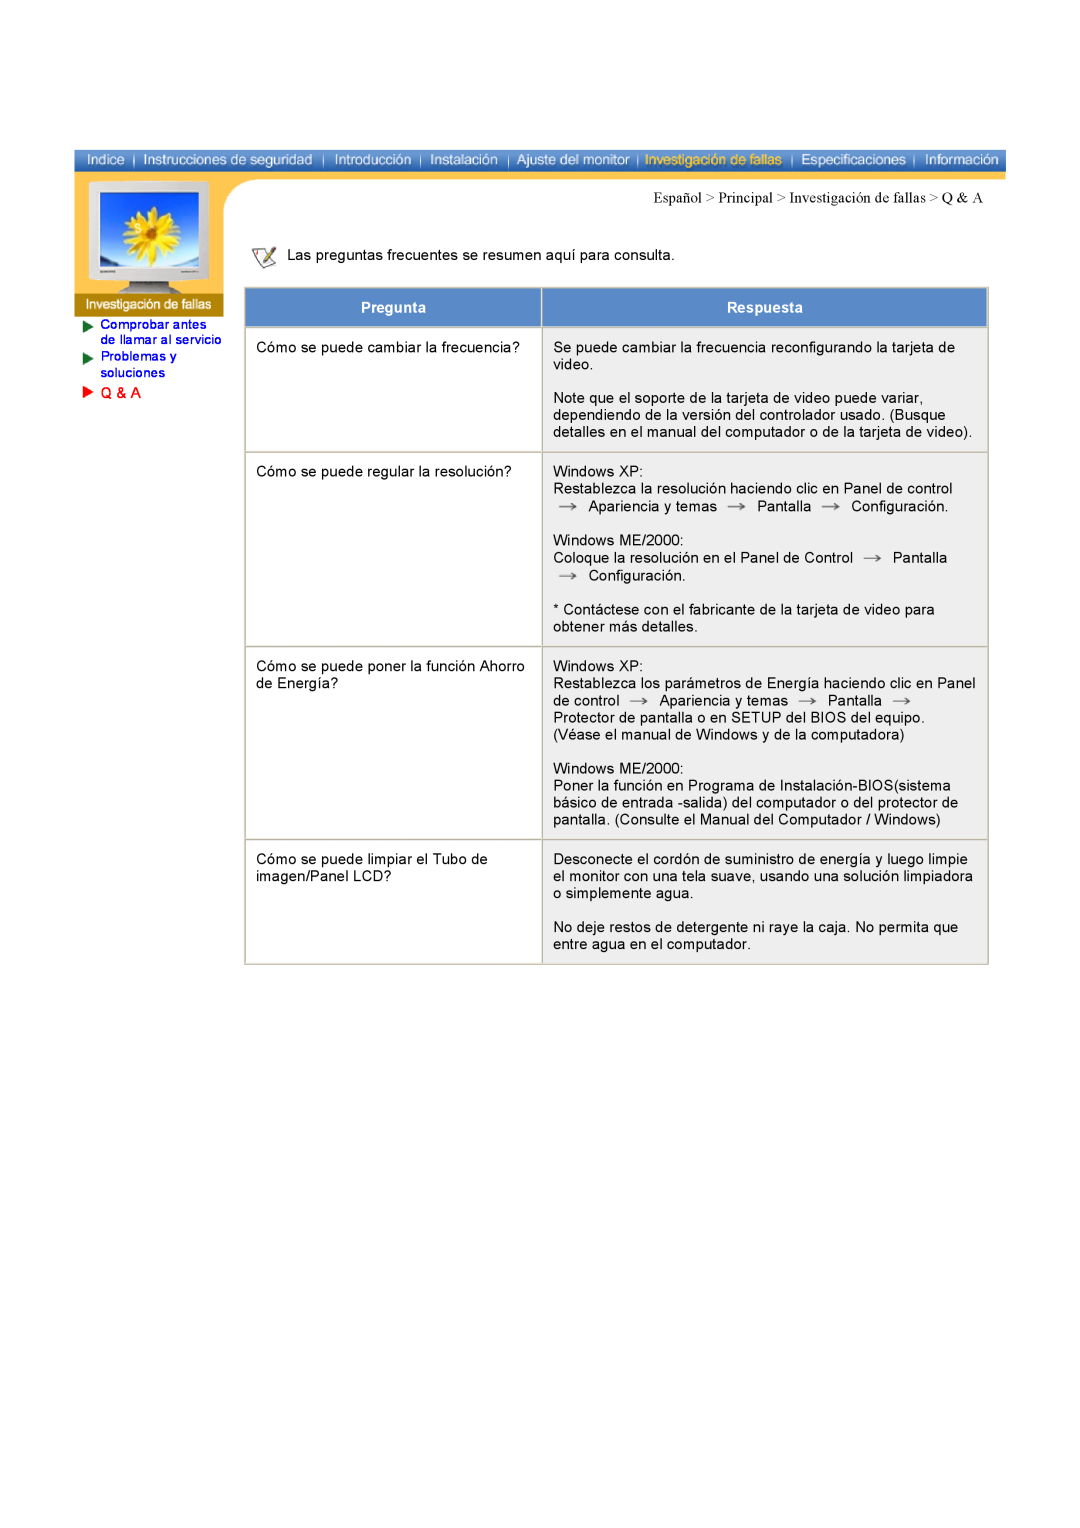 Samsung CK40PSNS/EDC, CK40BSNS/EDC manual Español Principal Investigación de fallas Q & A, Pregunta, Respuesta 